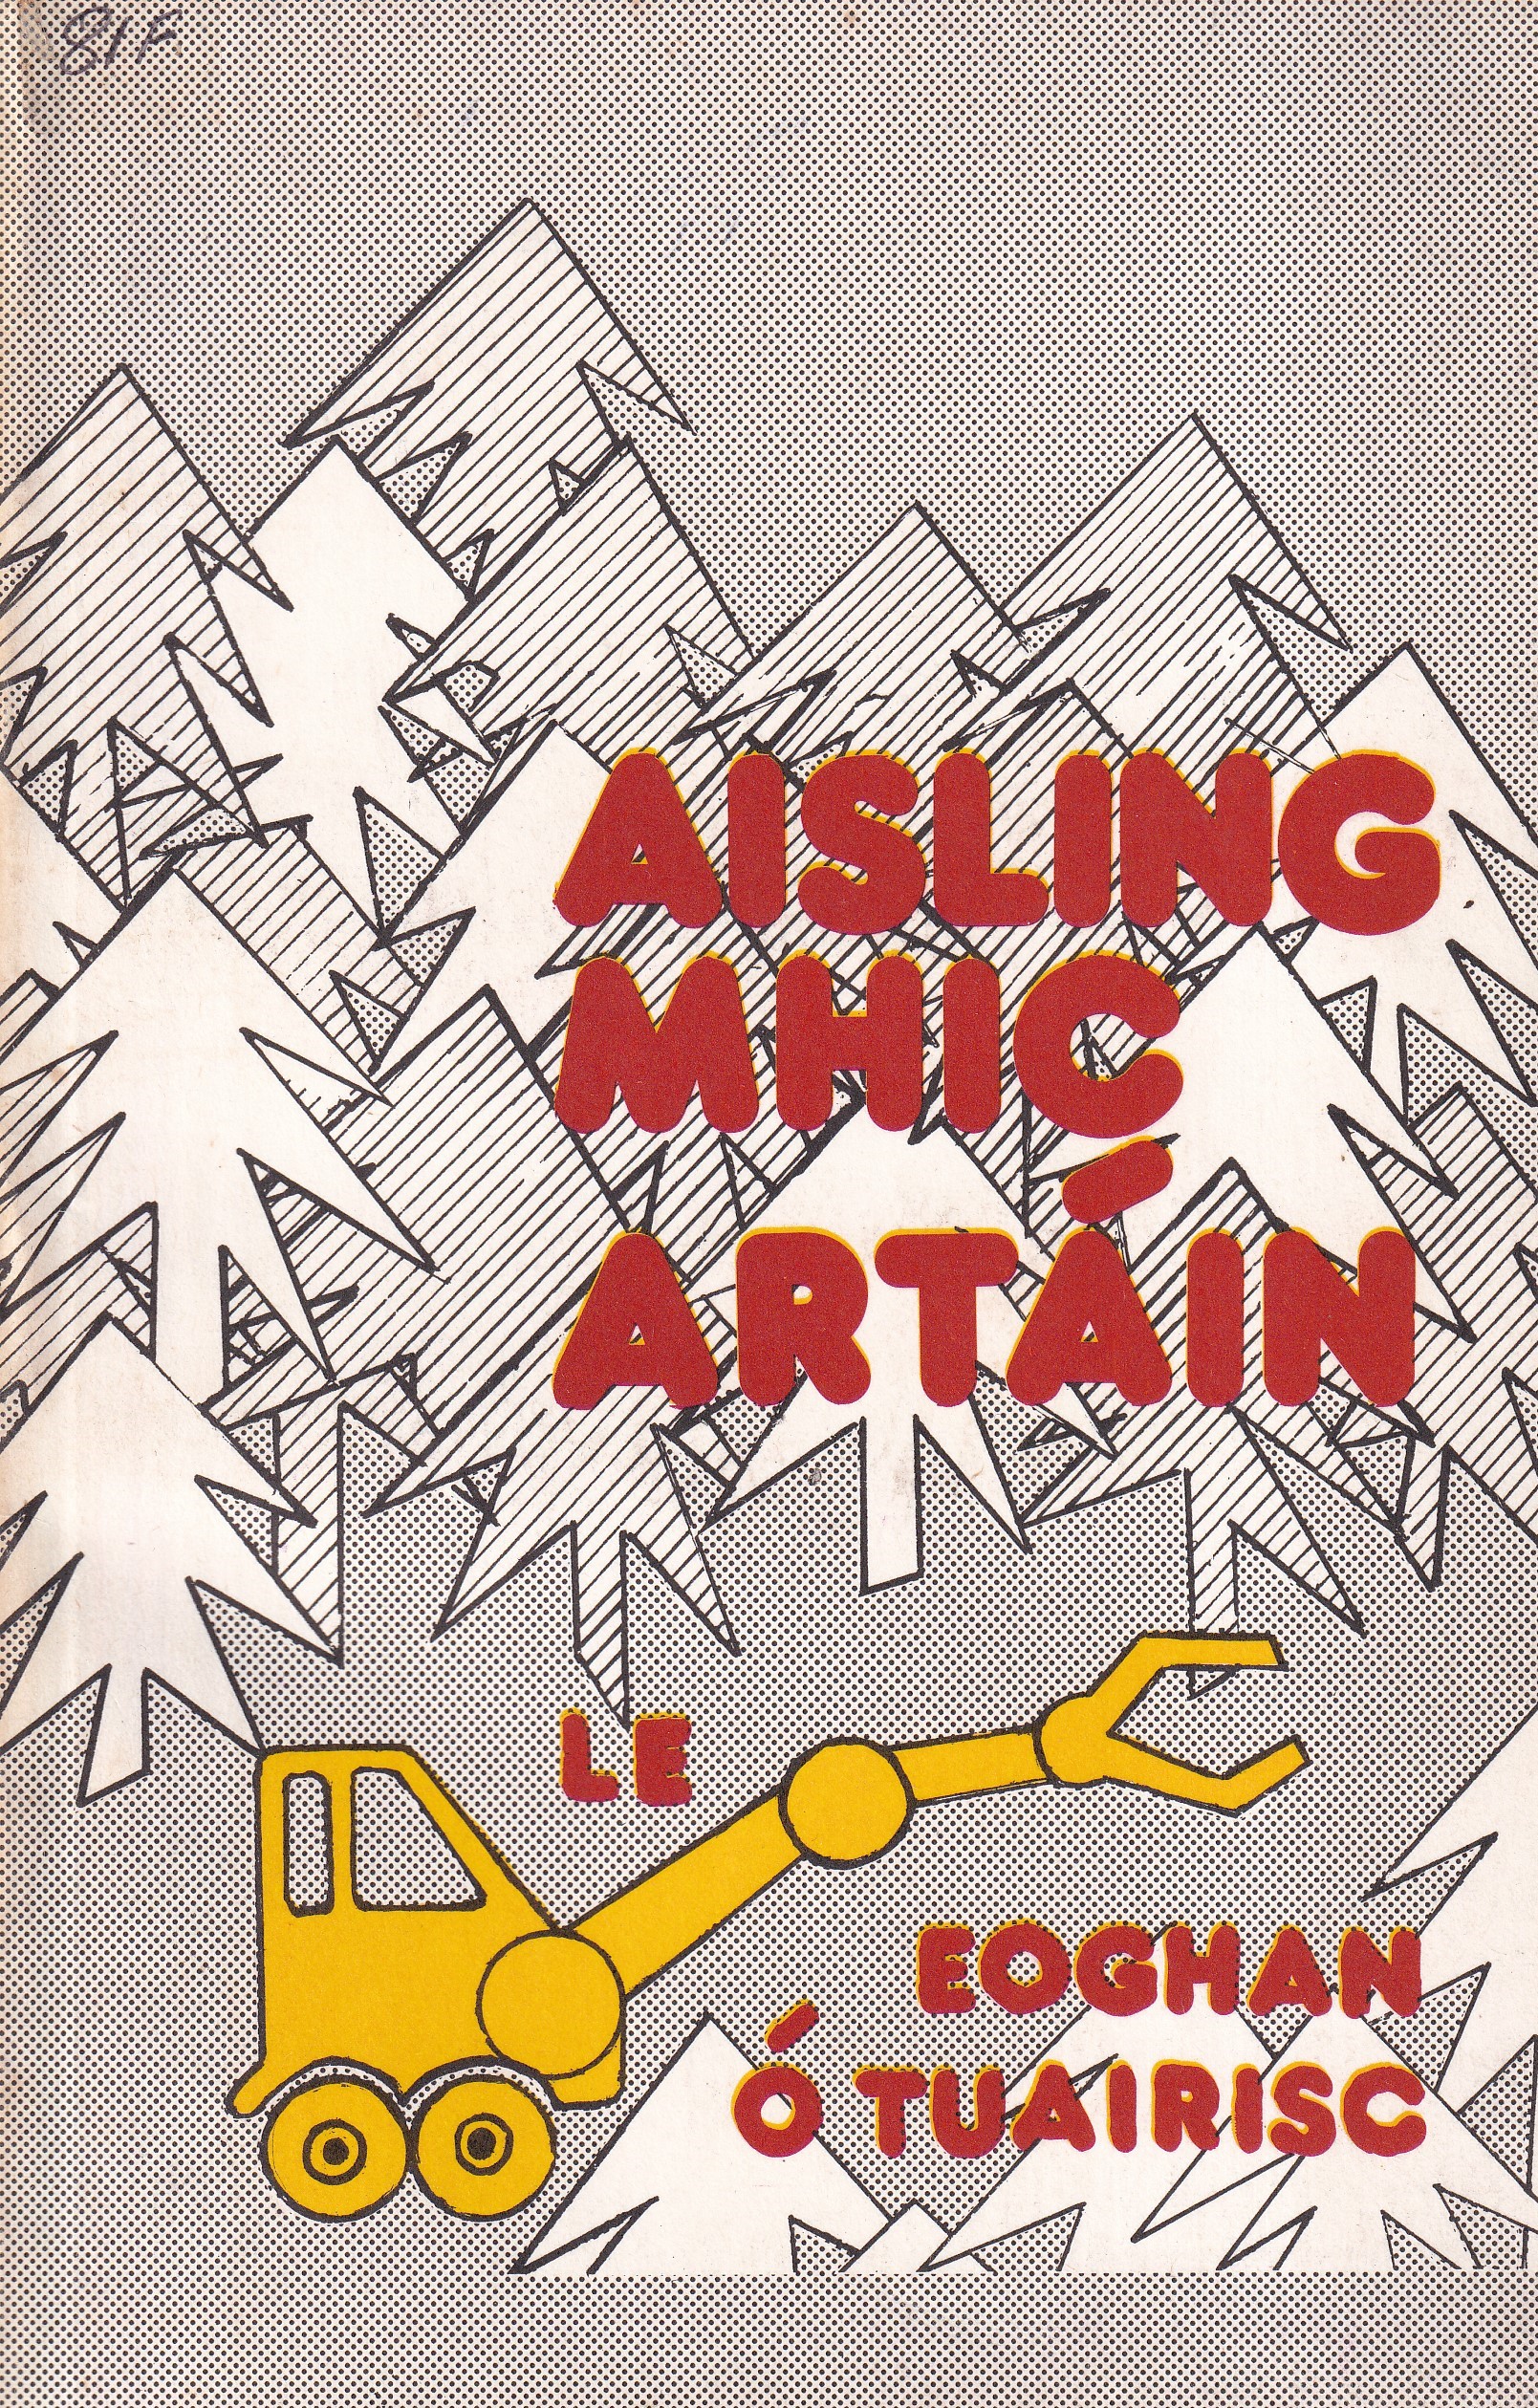 Aisling Mhic Artáin by Eoghan Ó Tuairisc